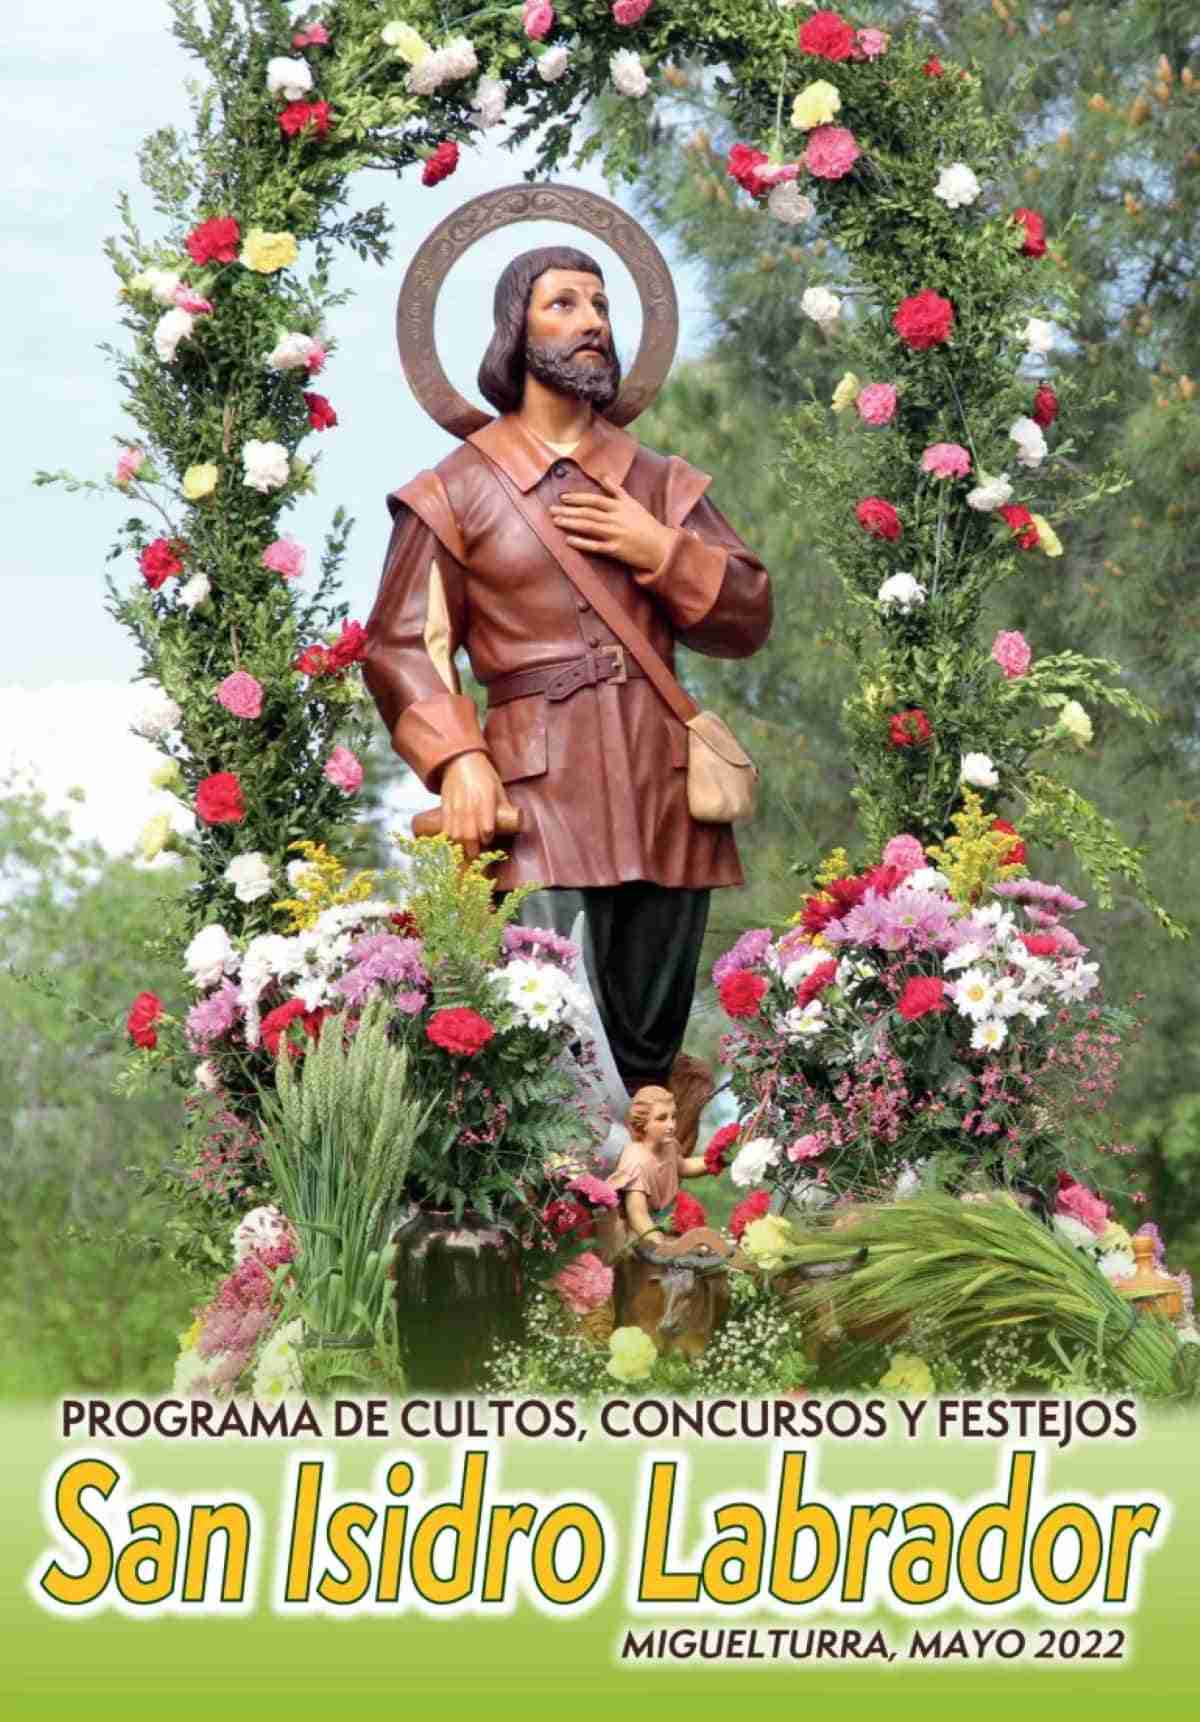 Programación de cultos, concursos, festejos en honor a San Isidro Labrador  que finalizarán el domingo 15 de mayo en Miguelturra | Noticias de  Castilla-La Mancha